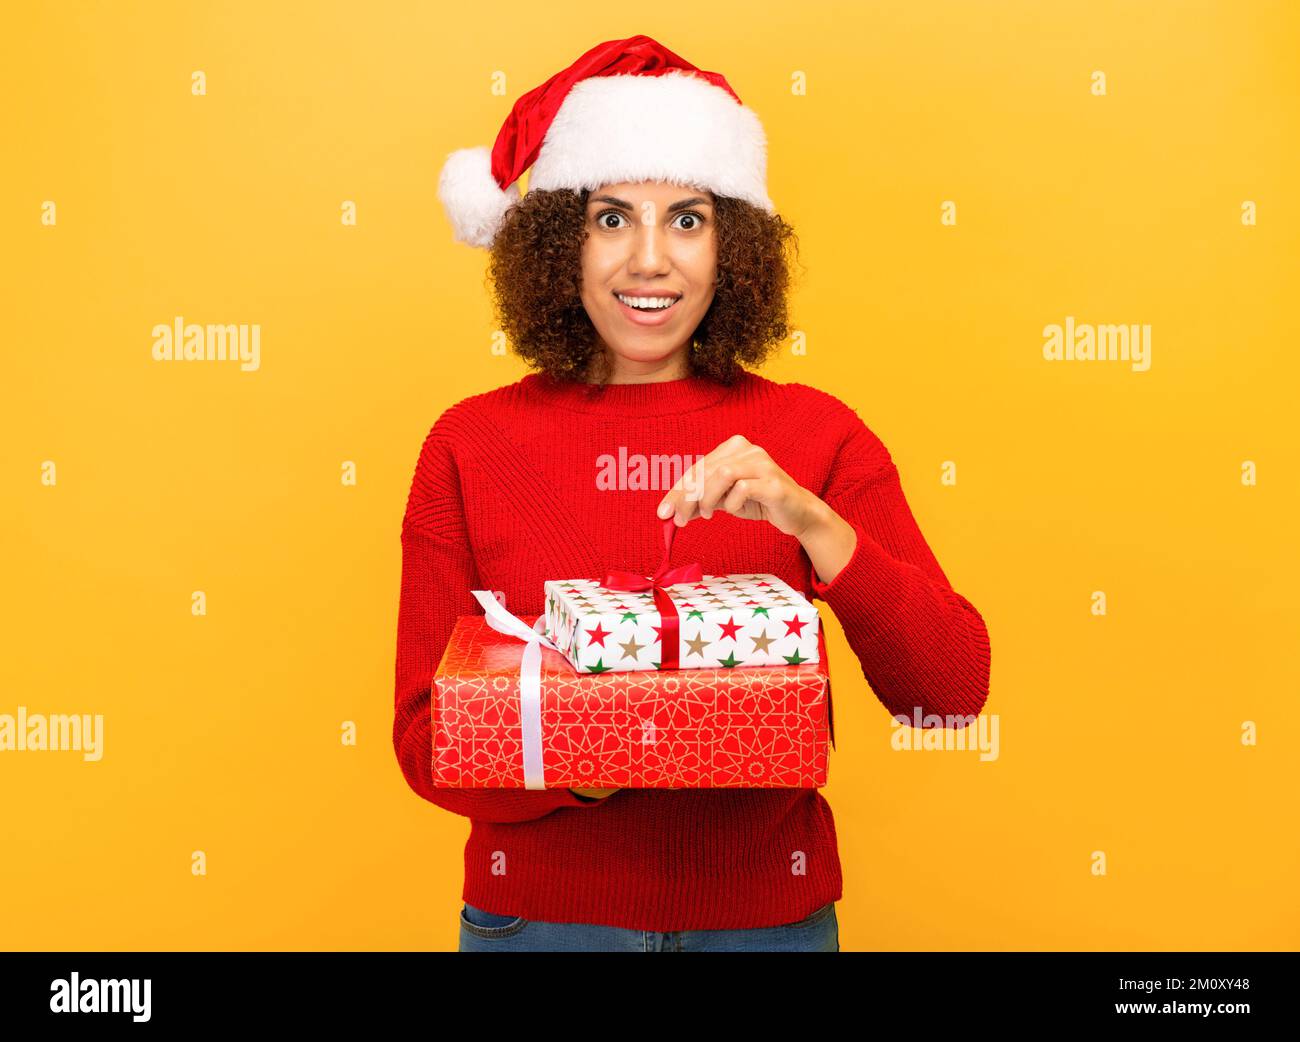 Angenehm aufgeregte glückliche Frau hält ein weihnachtsgeschenk in Händen. Frau mit weihnachtsmann-Hut auf orangefarbenem Hintergrund, lächelnd Stockfoto